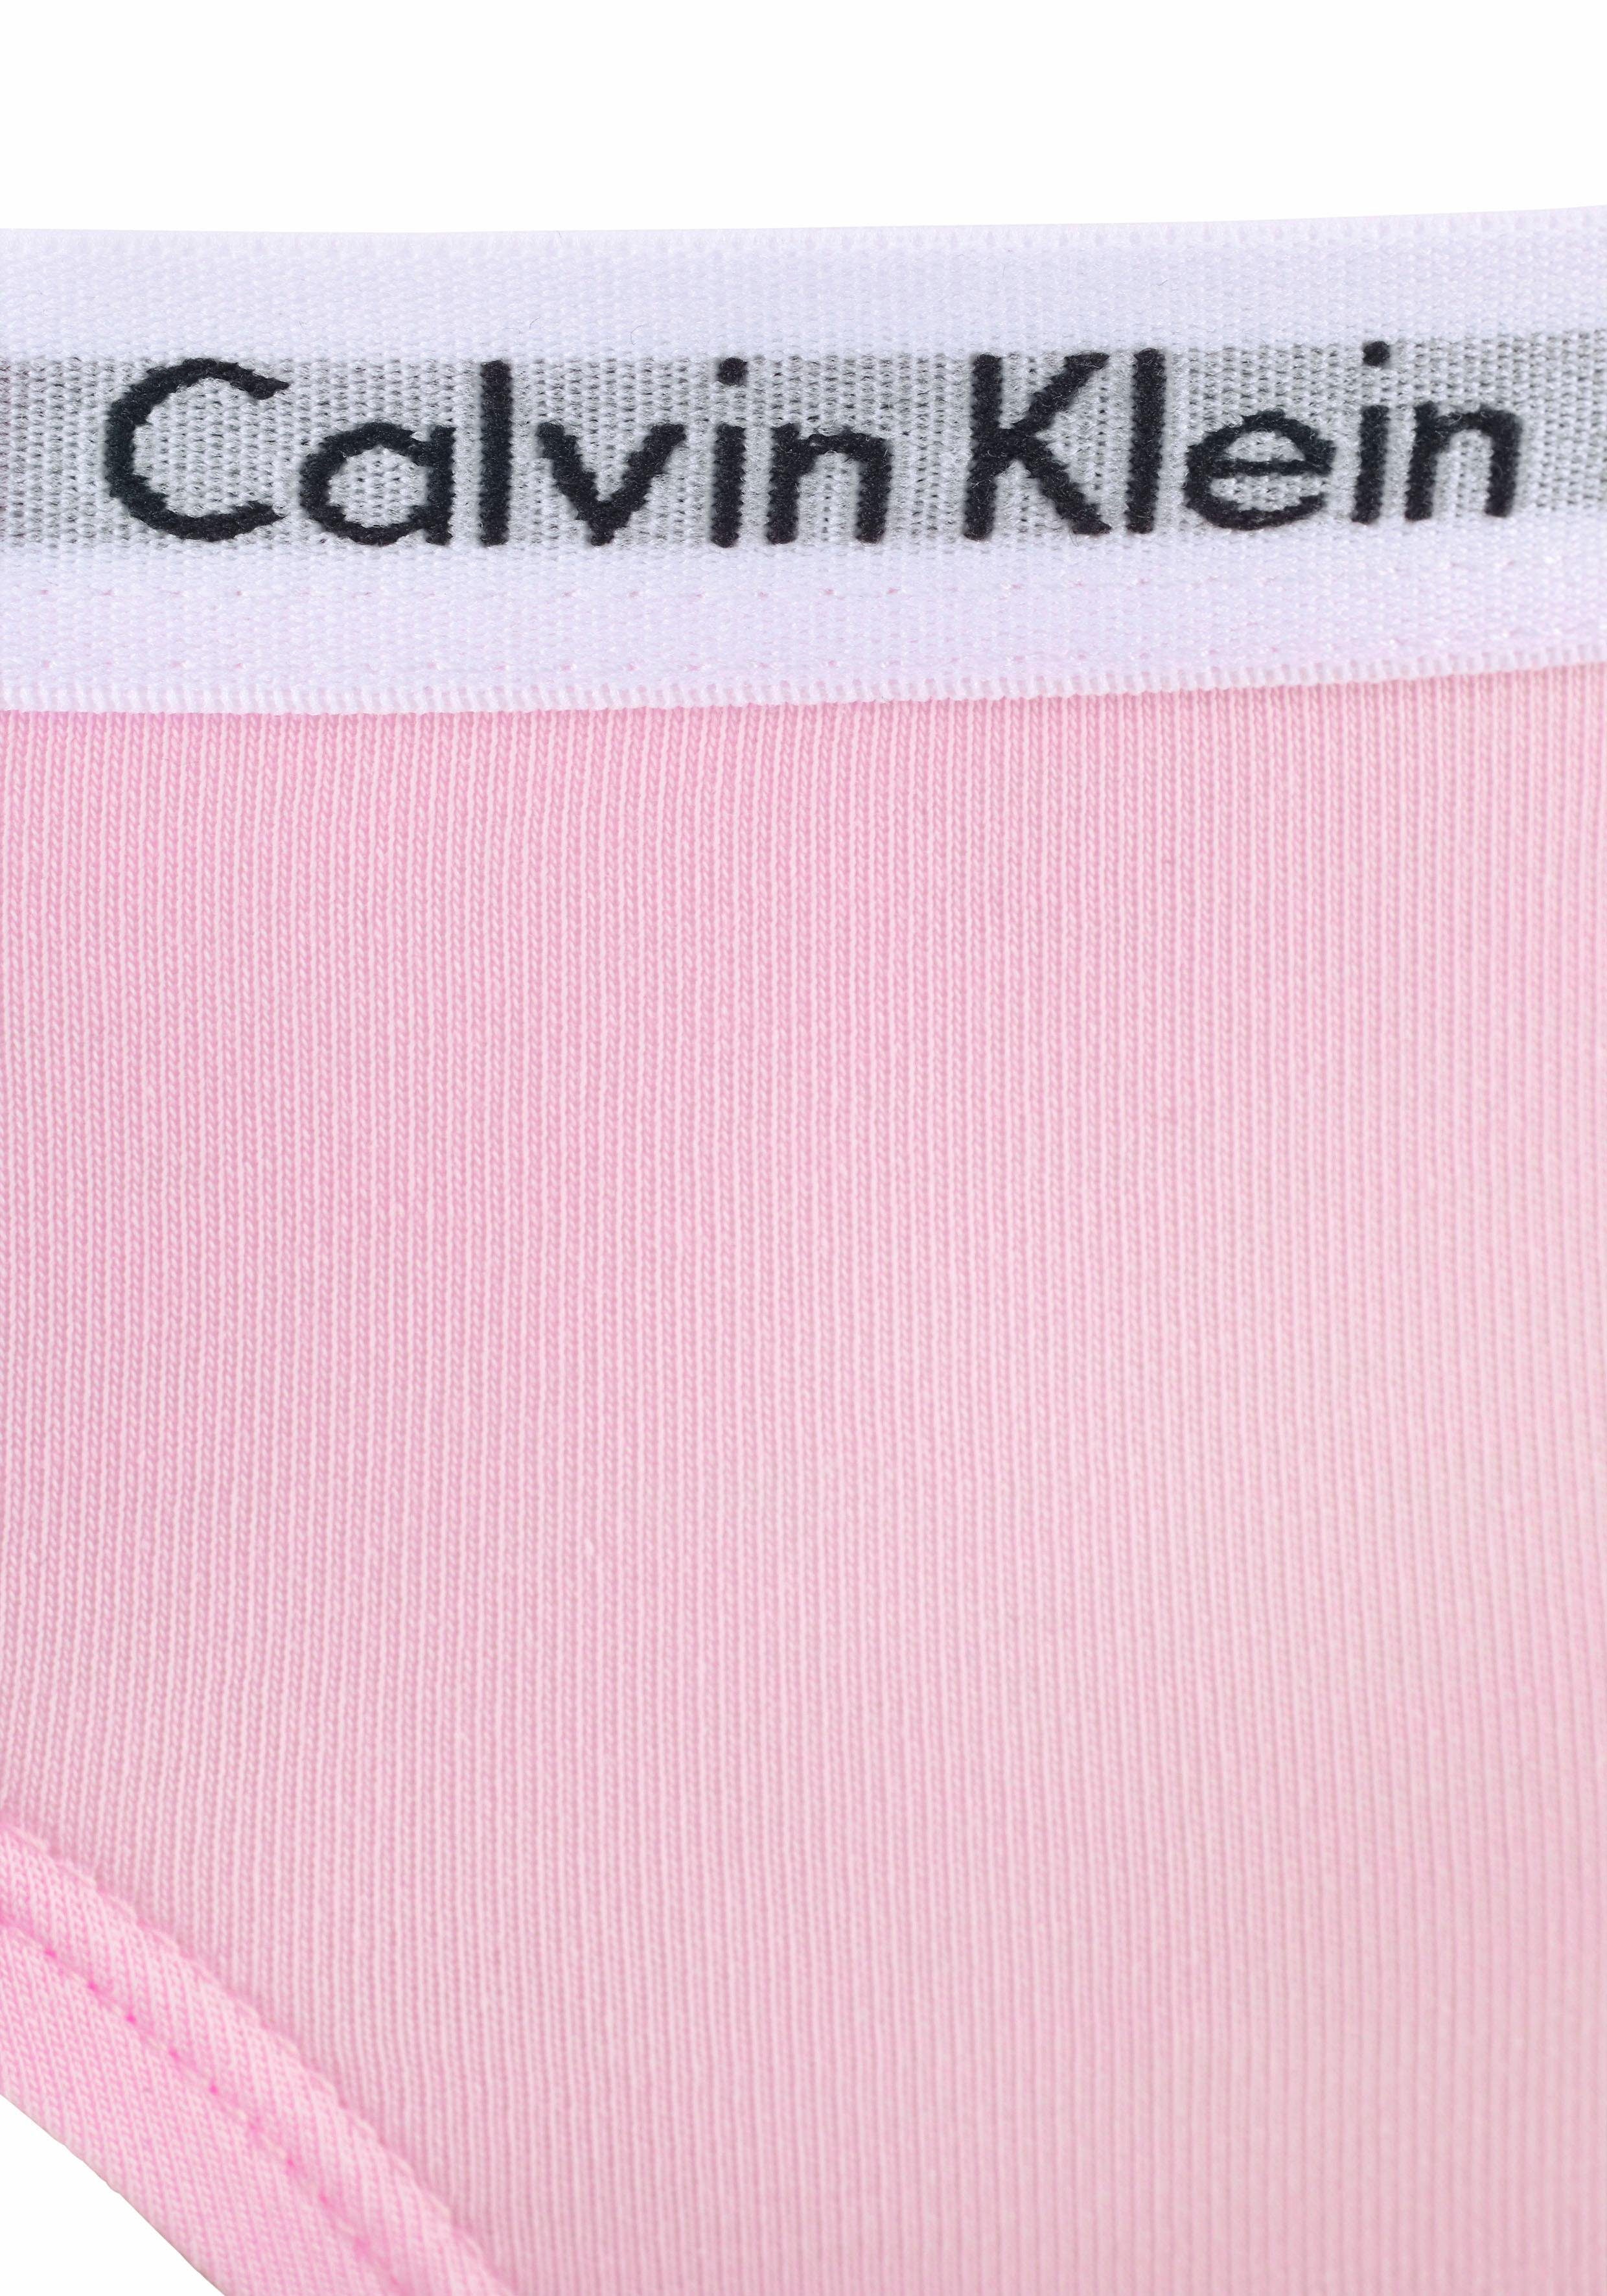 Klein Kinder Mädchen Junior MiniMe,für mit Underwear Logobund Slip Calvin Kids